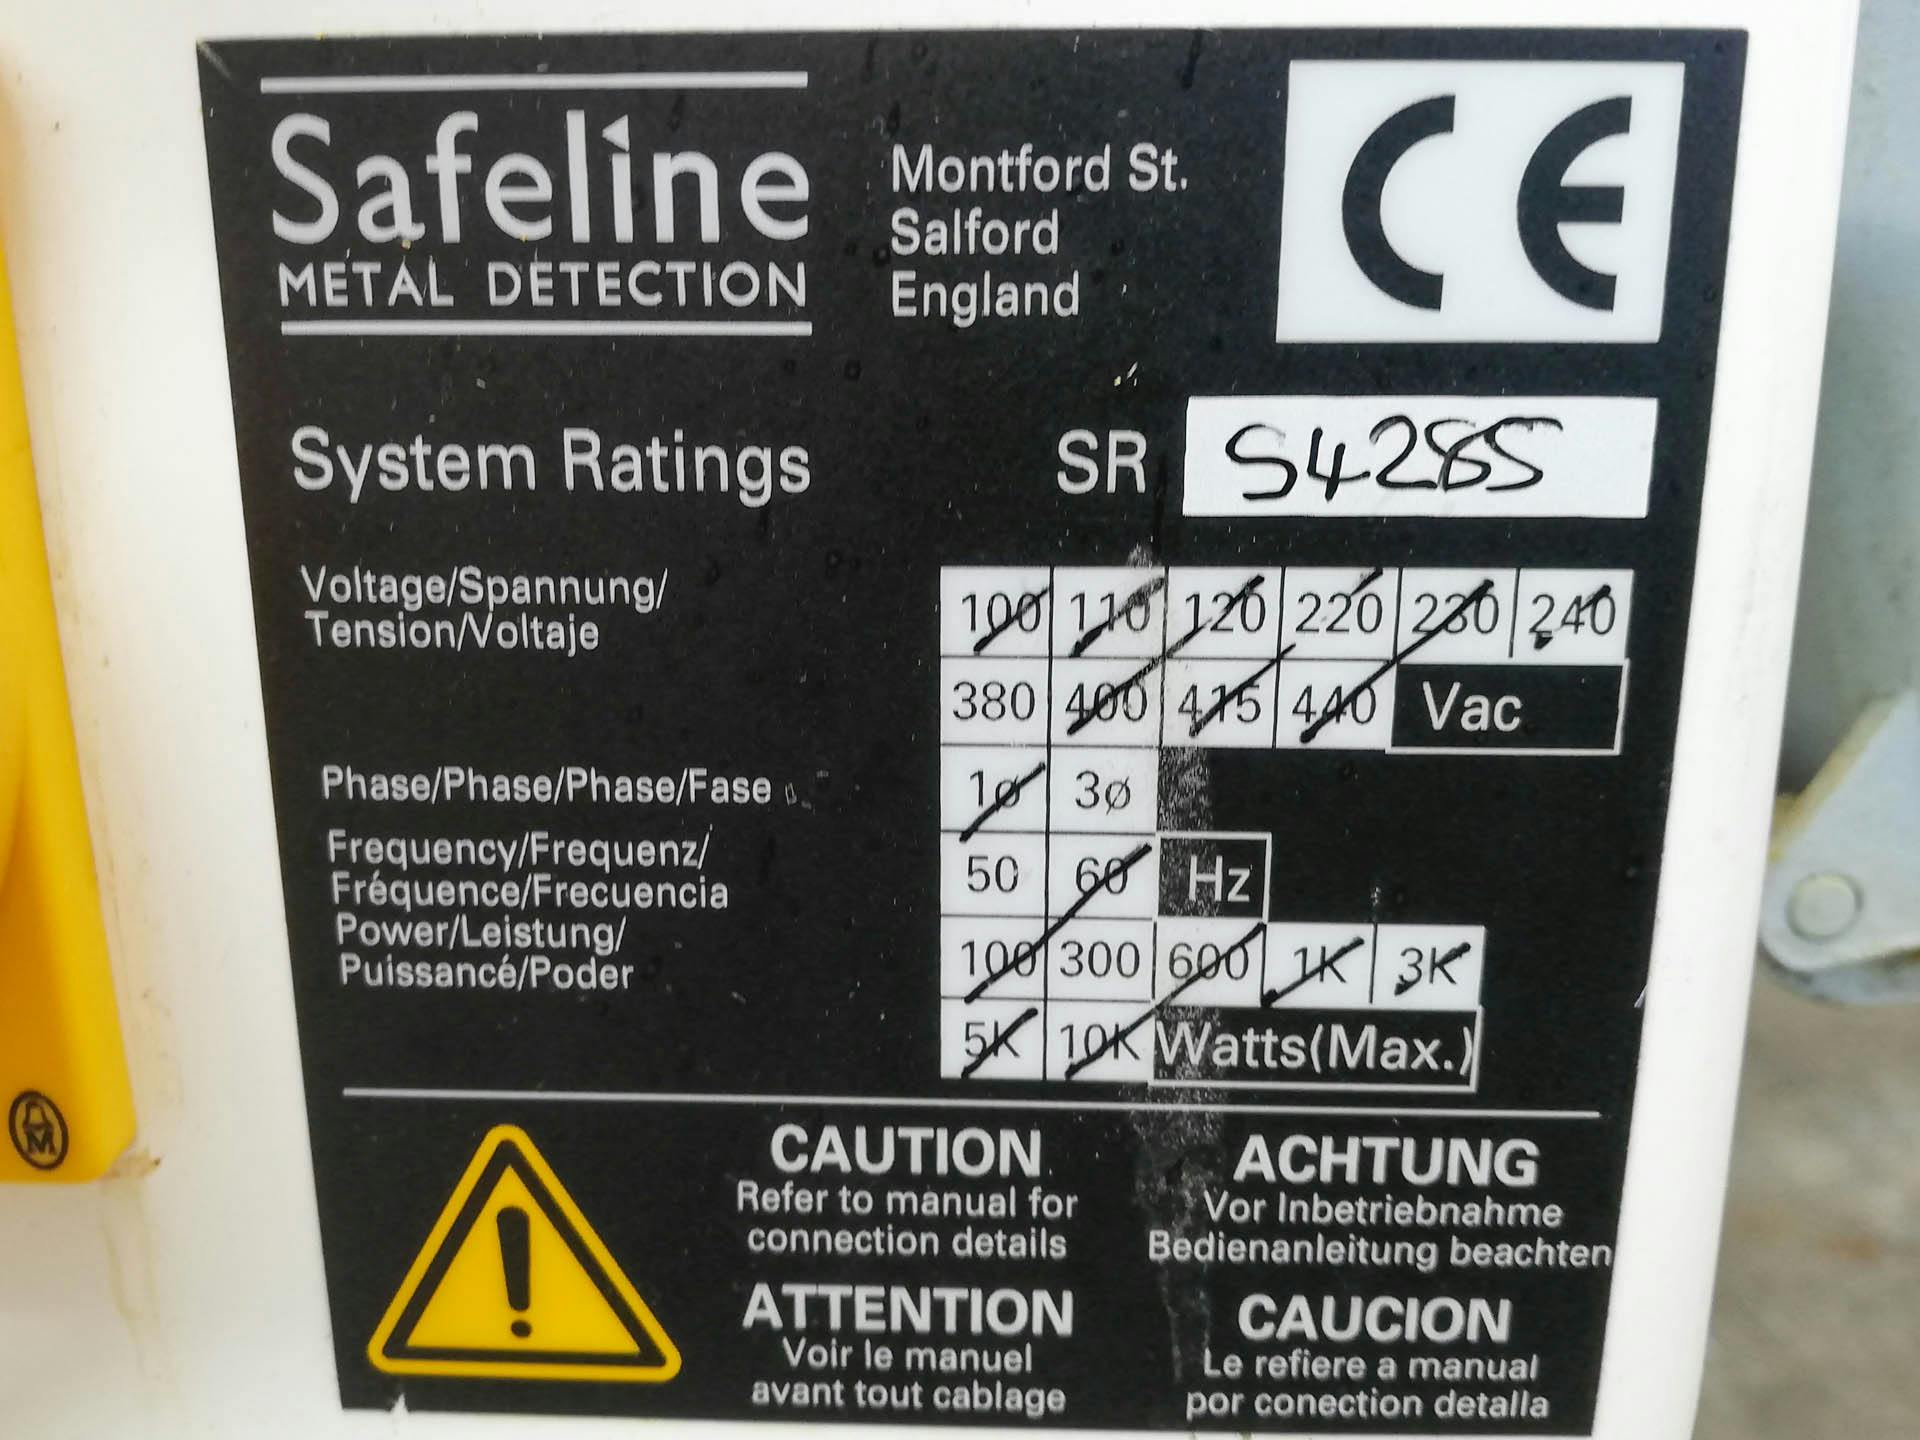 Safeline Uk Signature 2 - Détecteur de métaux - image 5